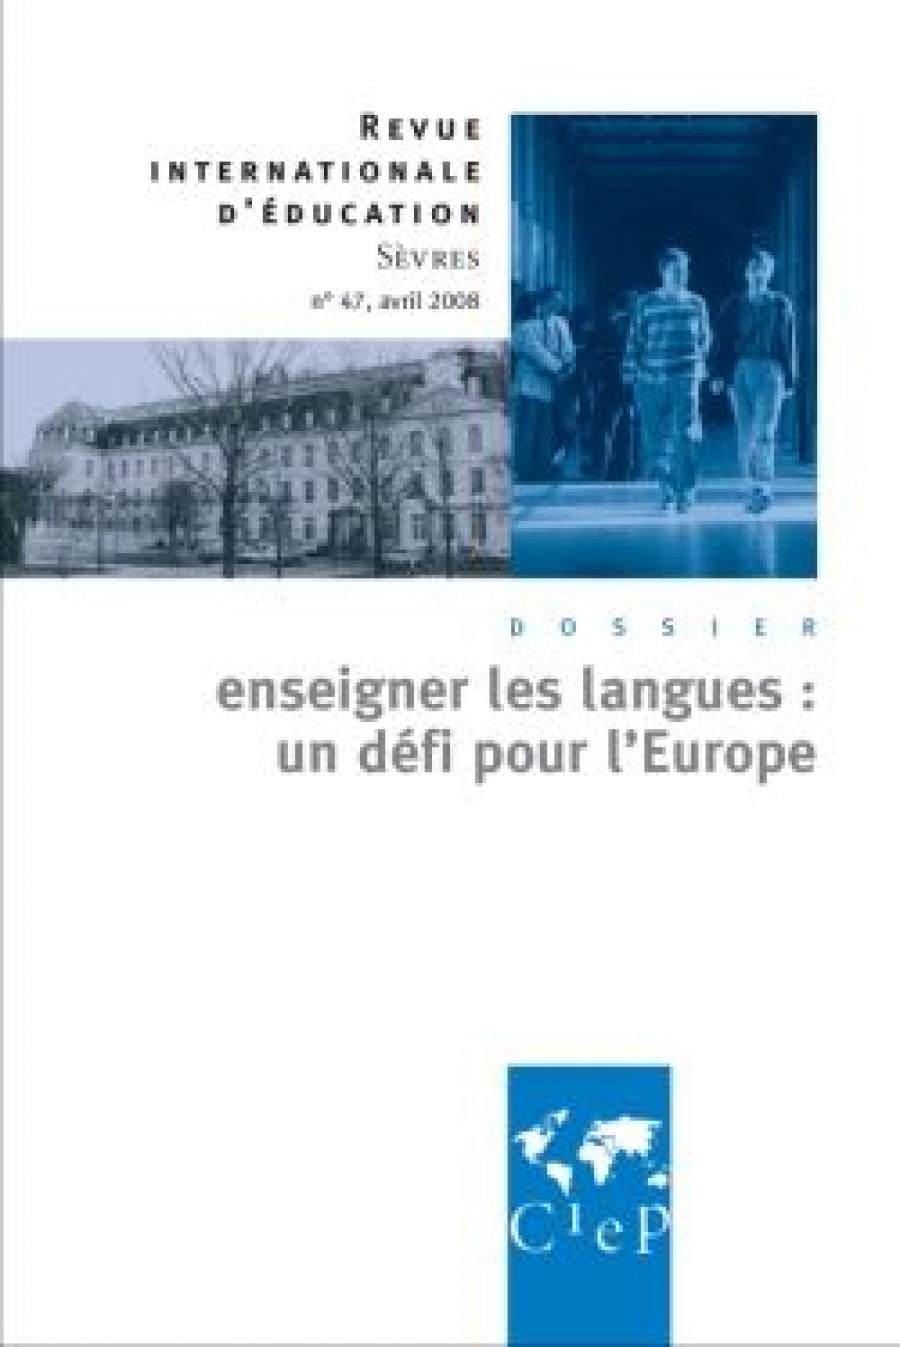 Collectif Enseigner les langues, un defi pour l'europe 